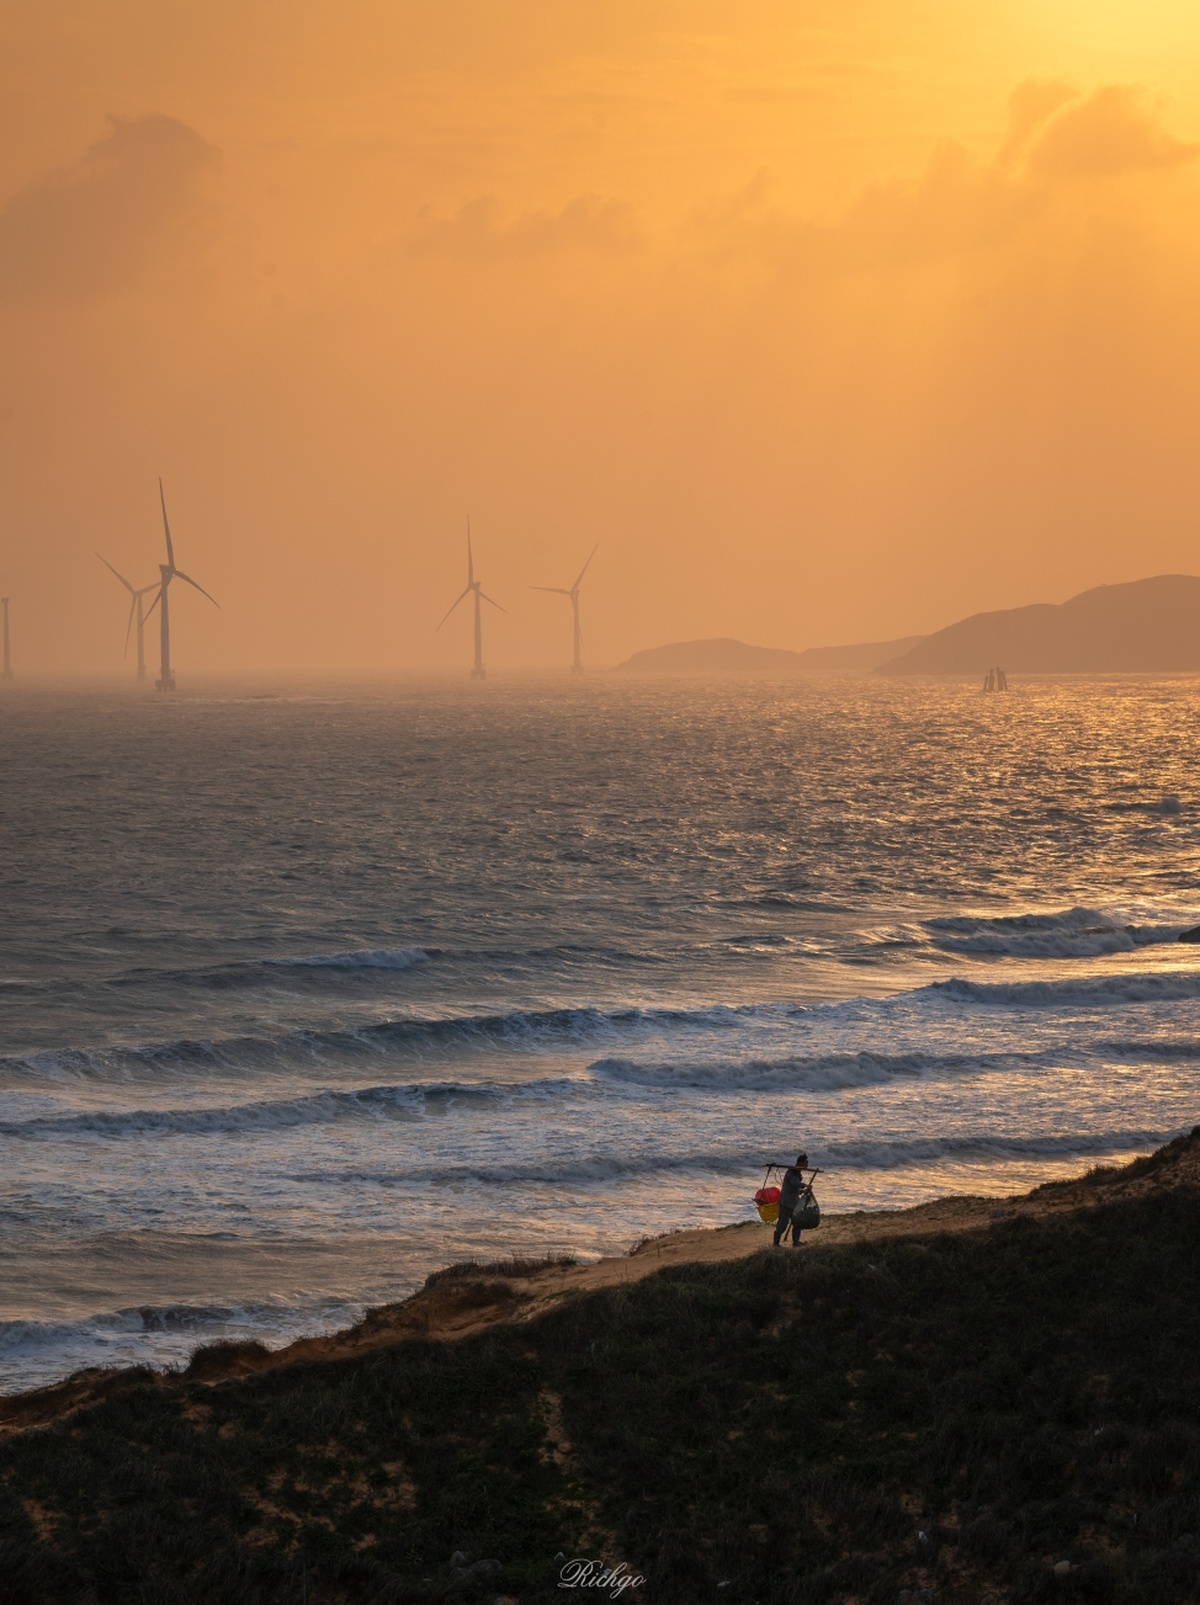 夕阳西下 几人在远处风力发电机下沿着海滩漫步。